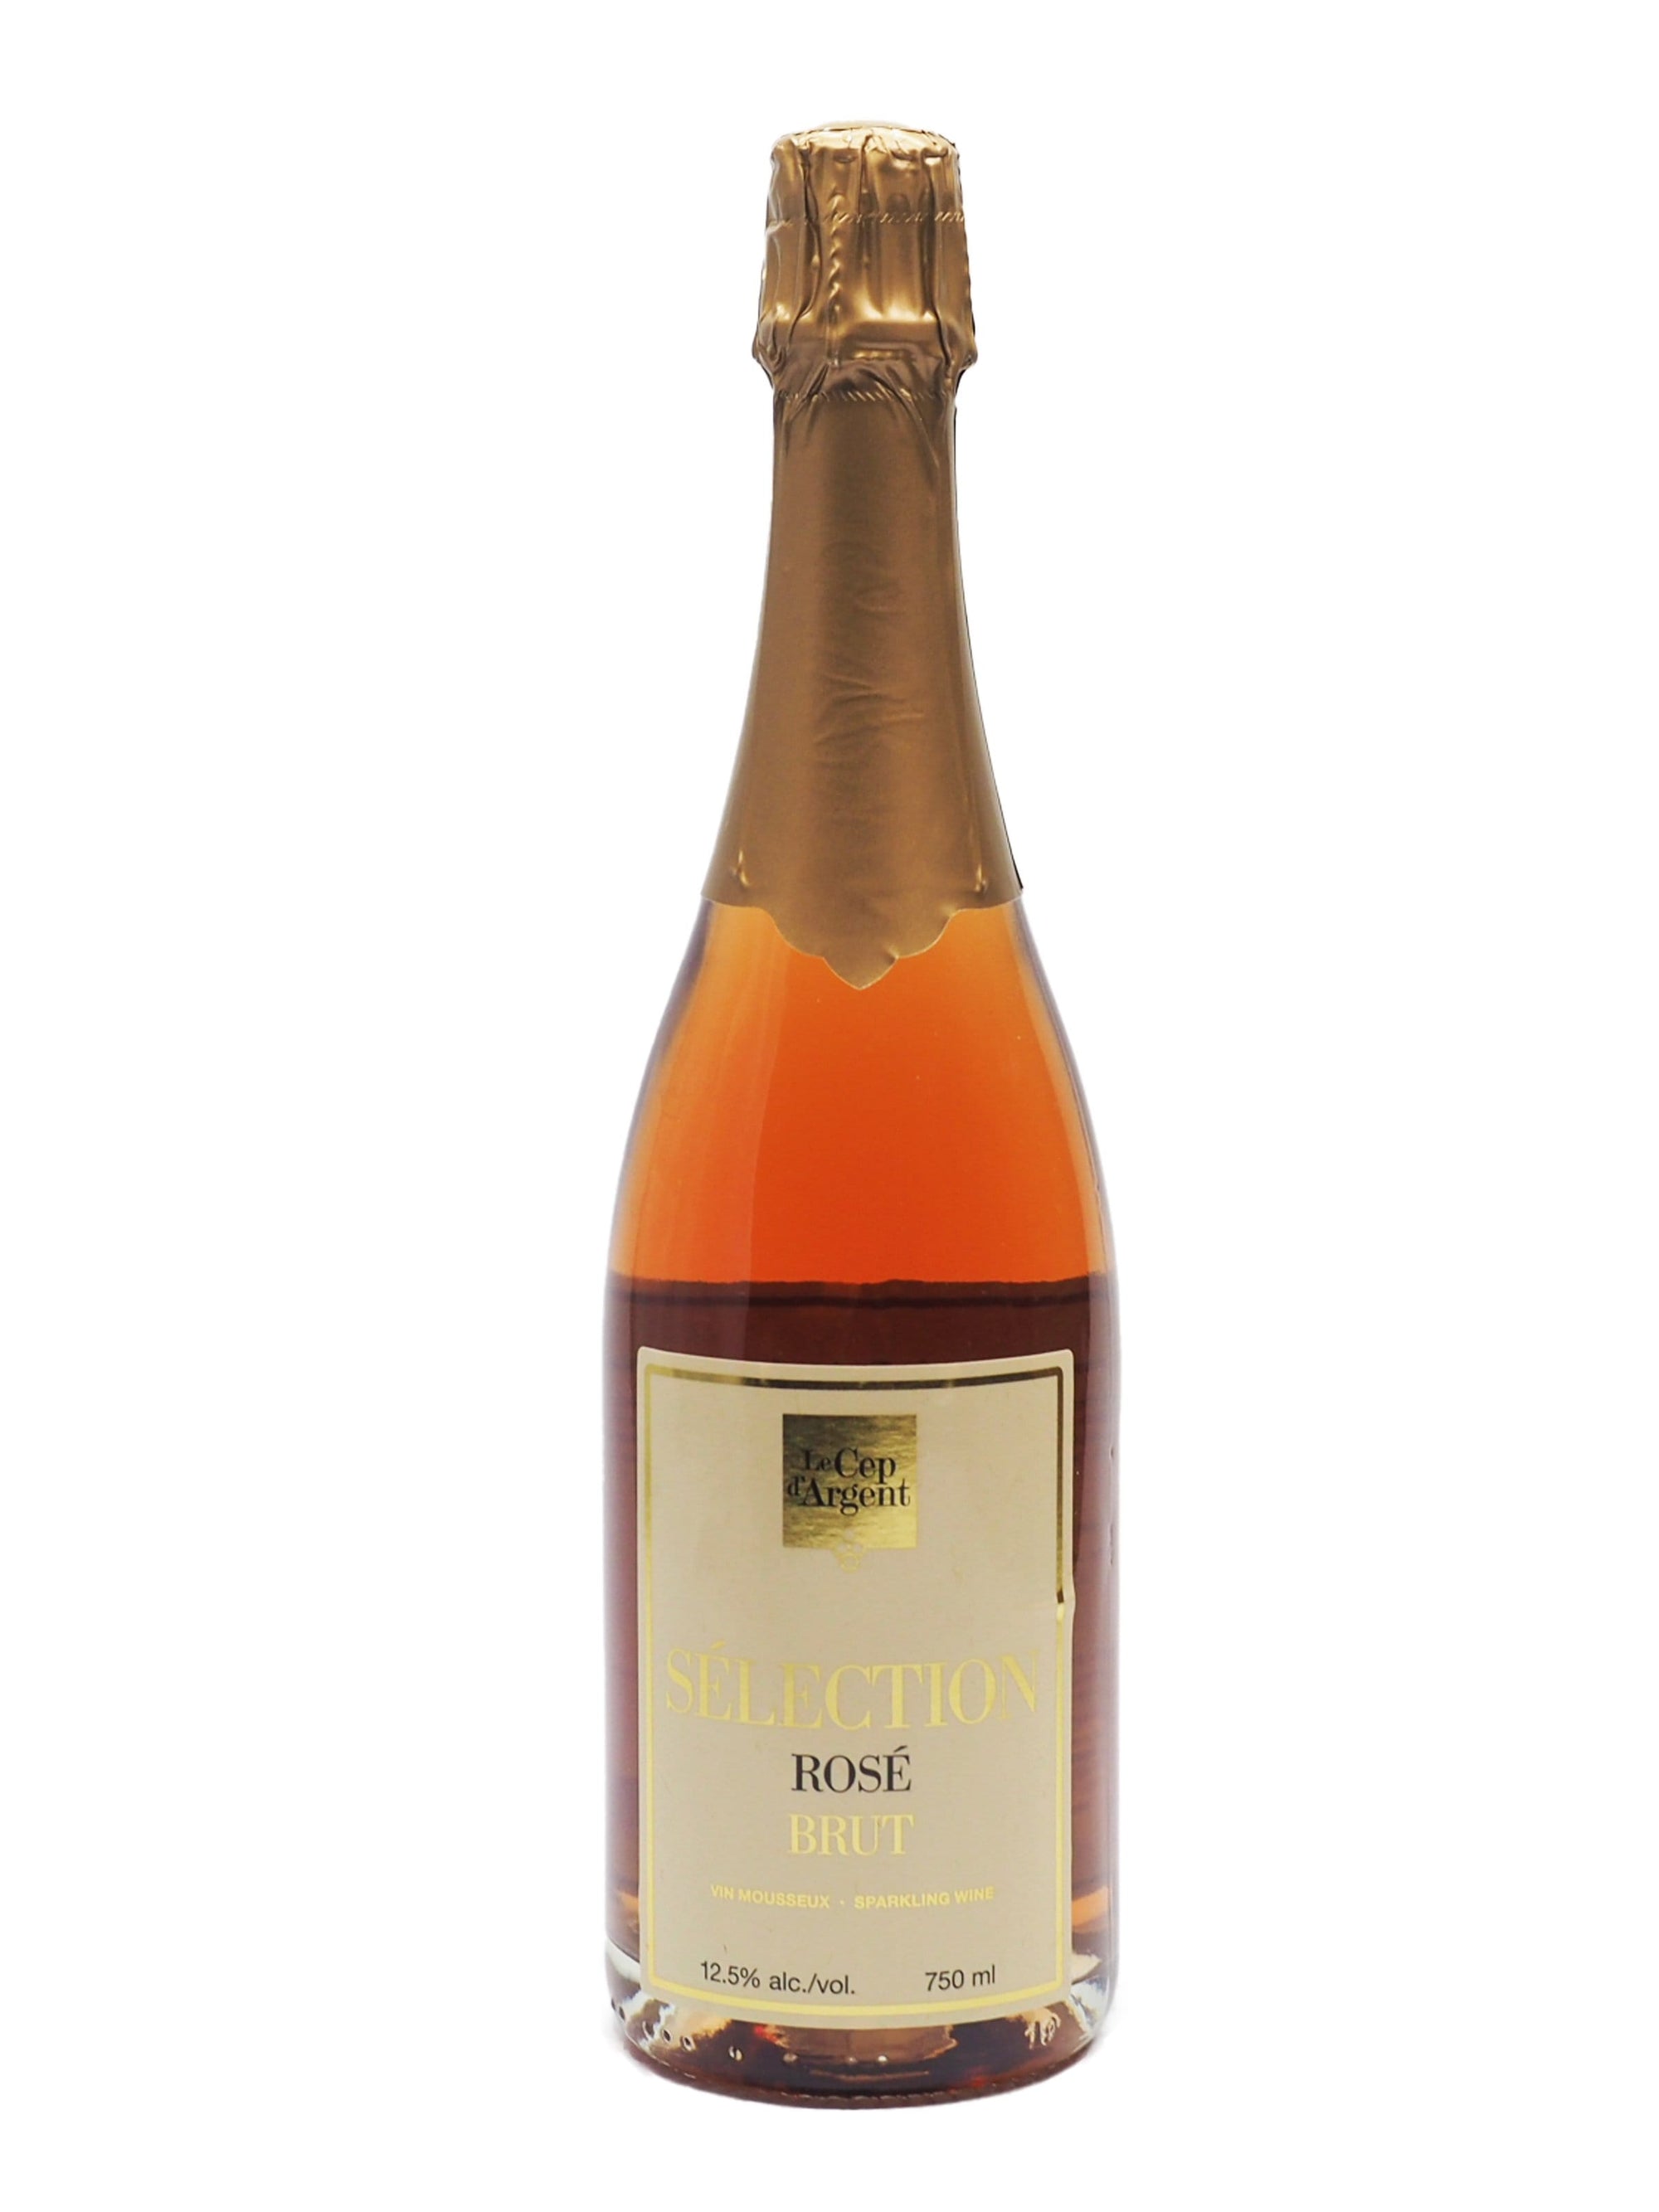 Sélection Brut Rosé - Vin rosé du vignoble du Cep d'Argent